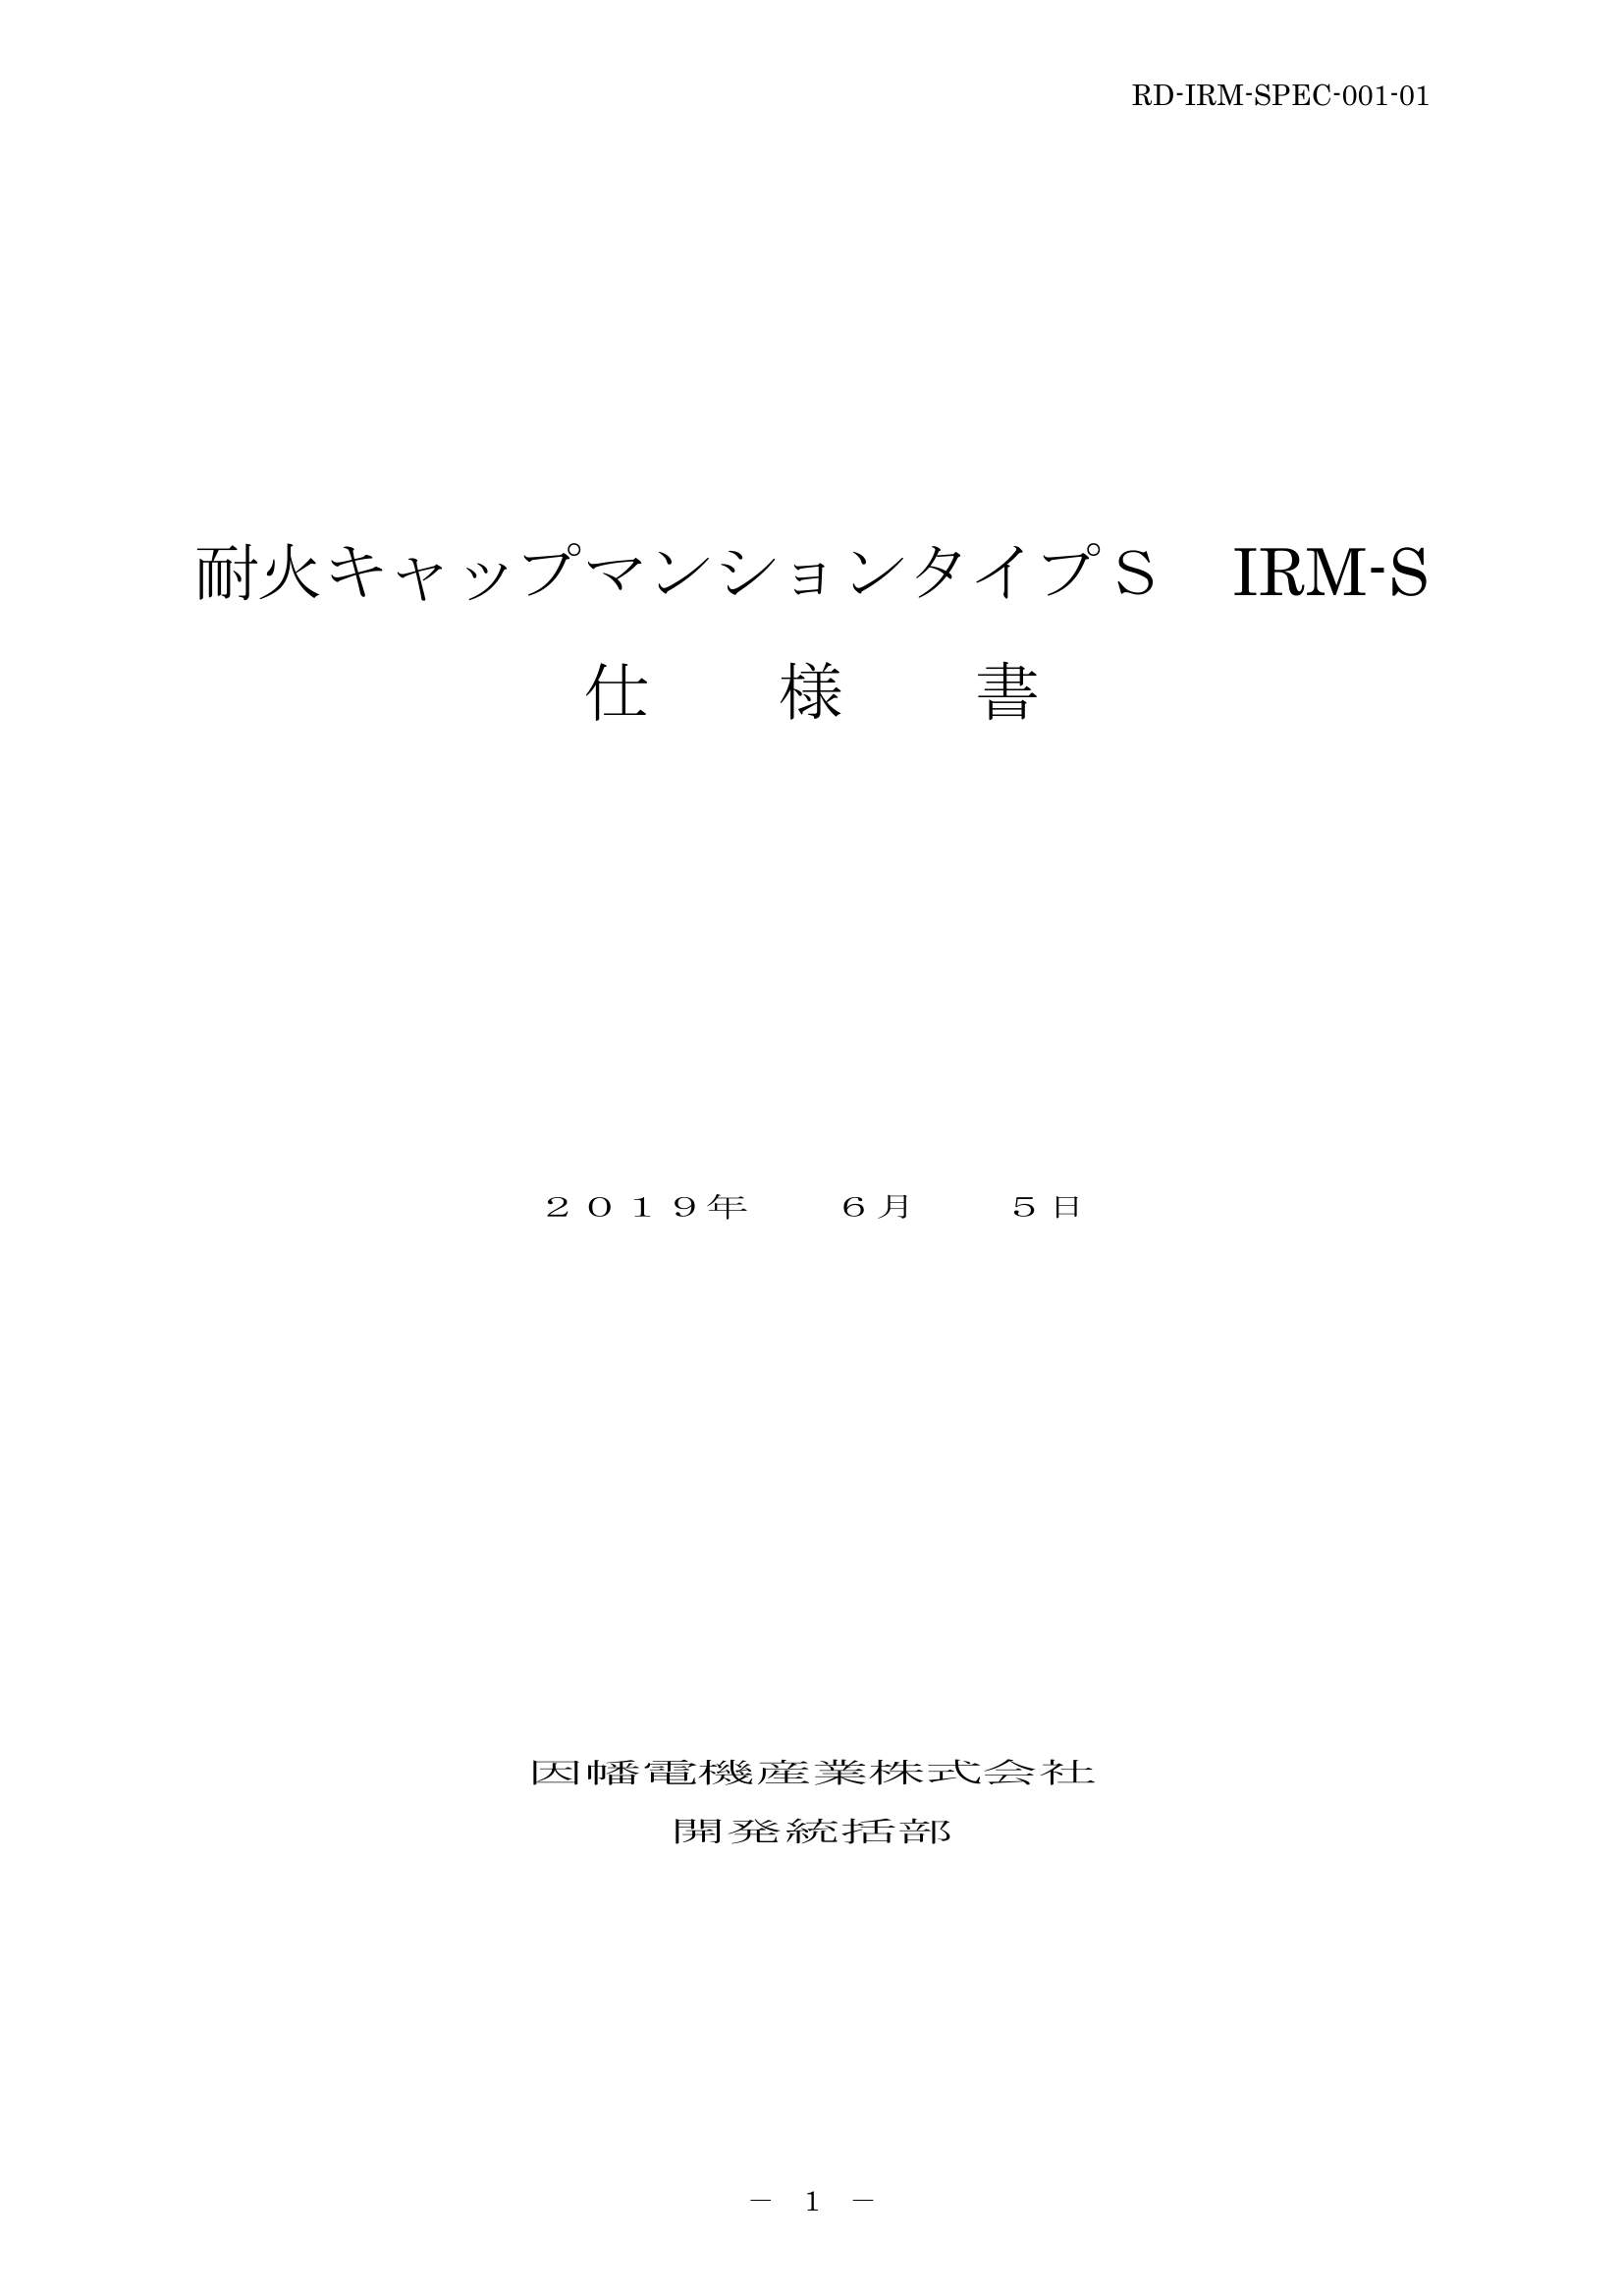 IRM-S_仕様書_20190605-0W.pdf